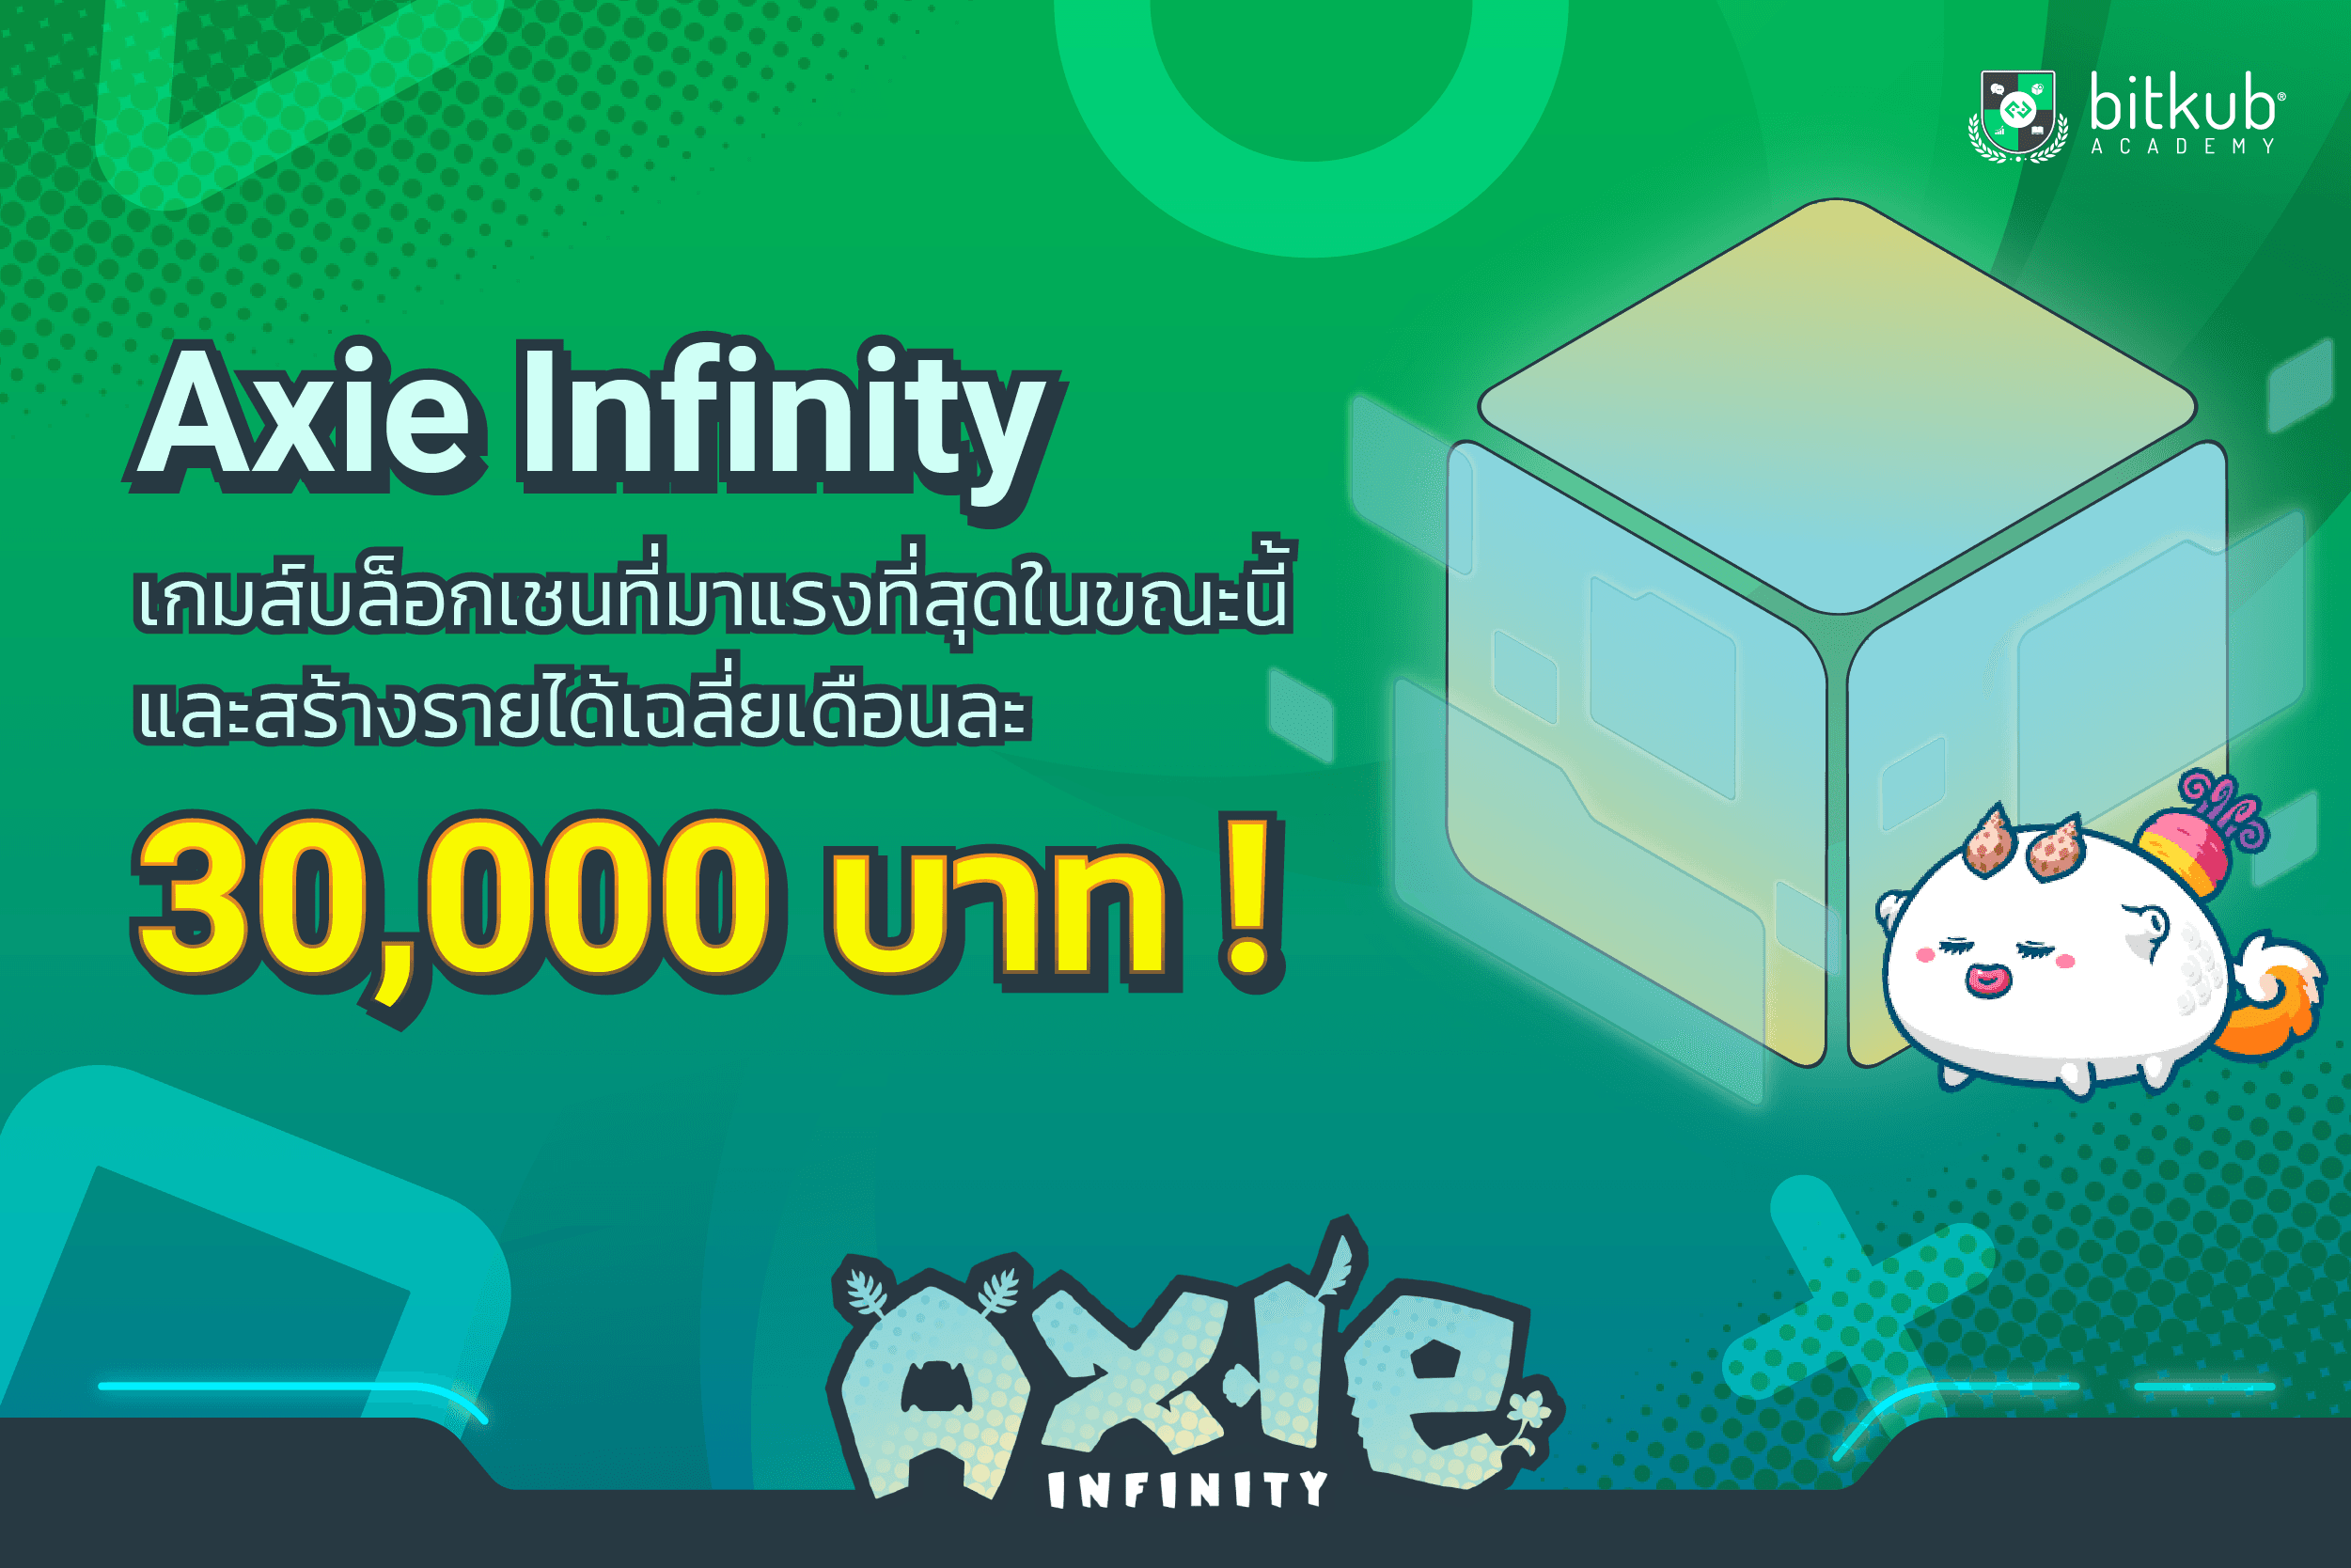 Axie Infinity เกมบนบล็อกเชนที่มาแรงที่สุด สร้างรายได้เฉลี่ยเดือนละ 30,000 บาท!